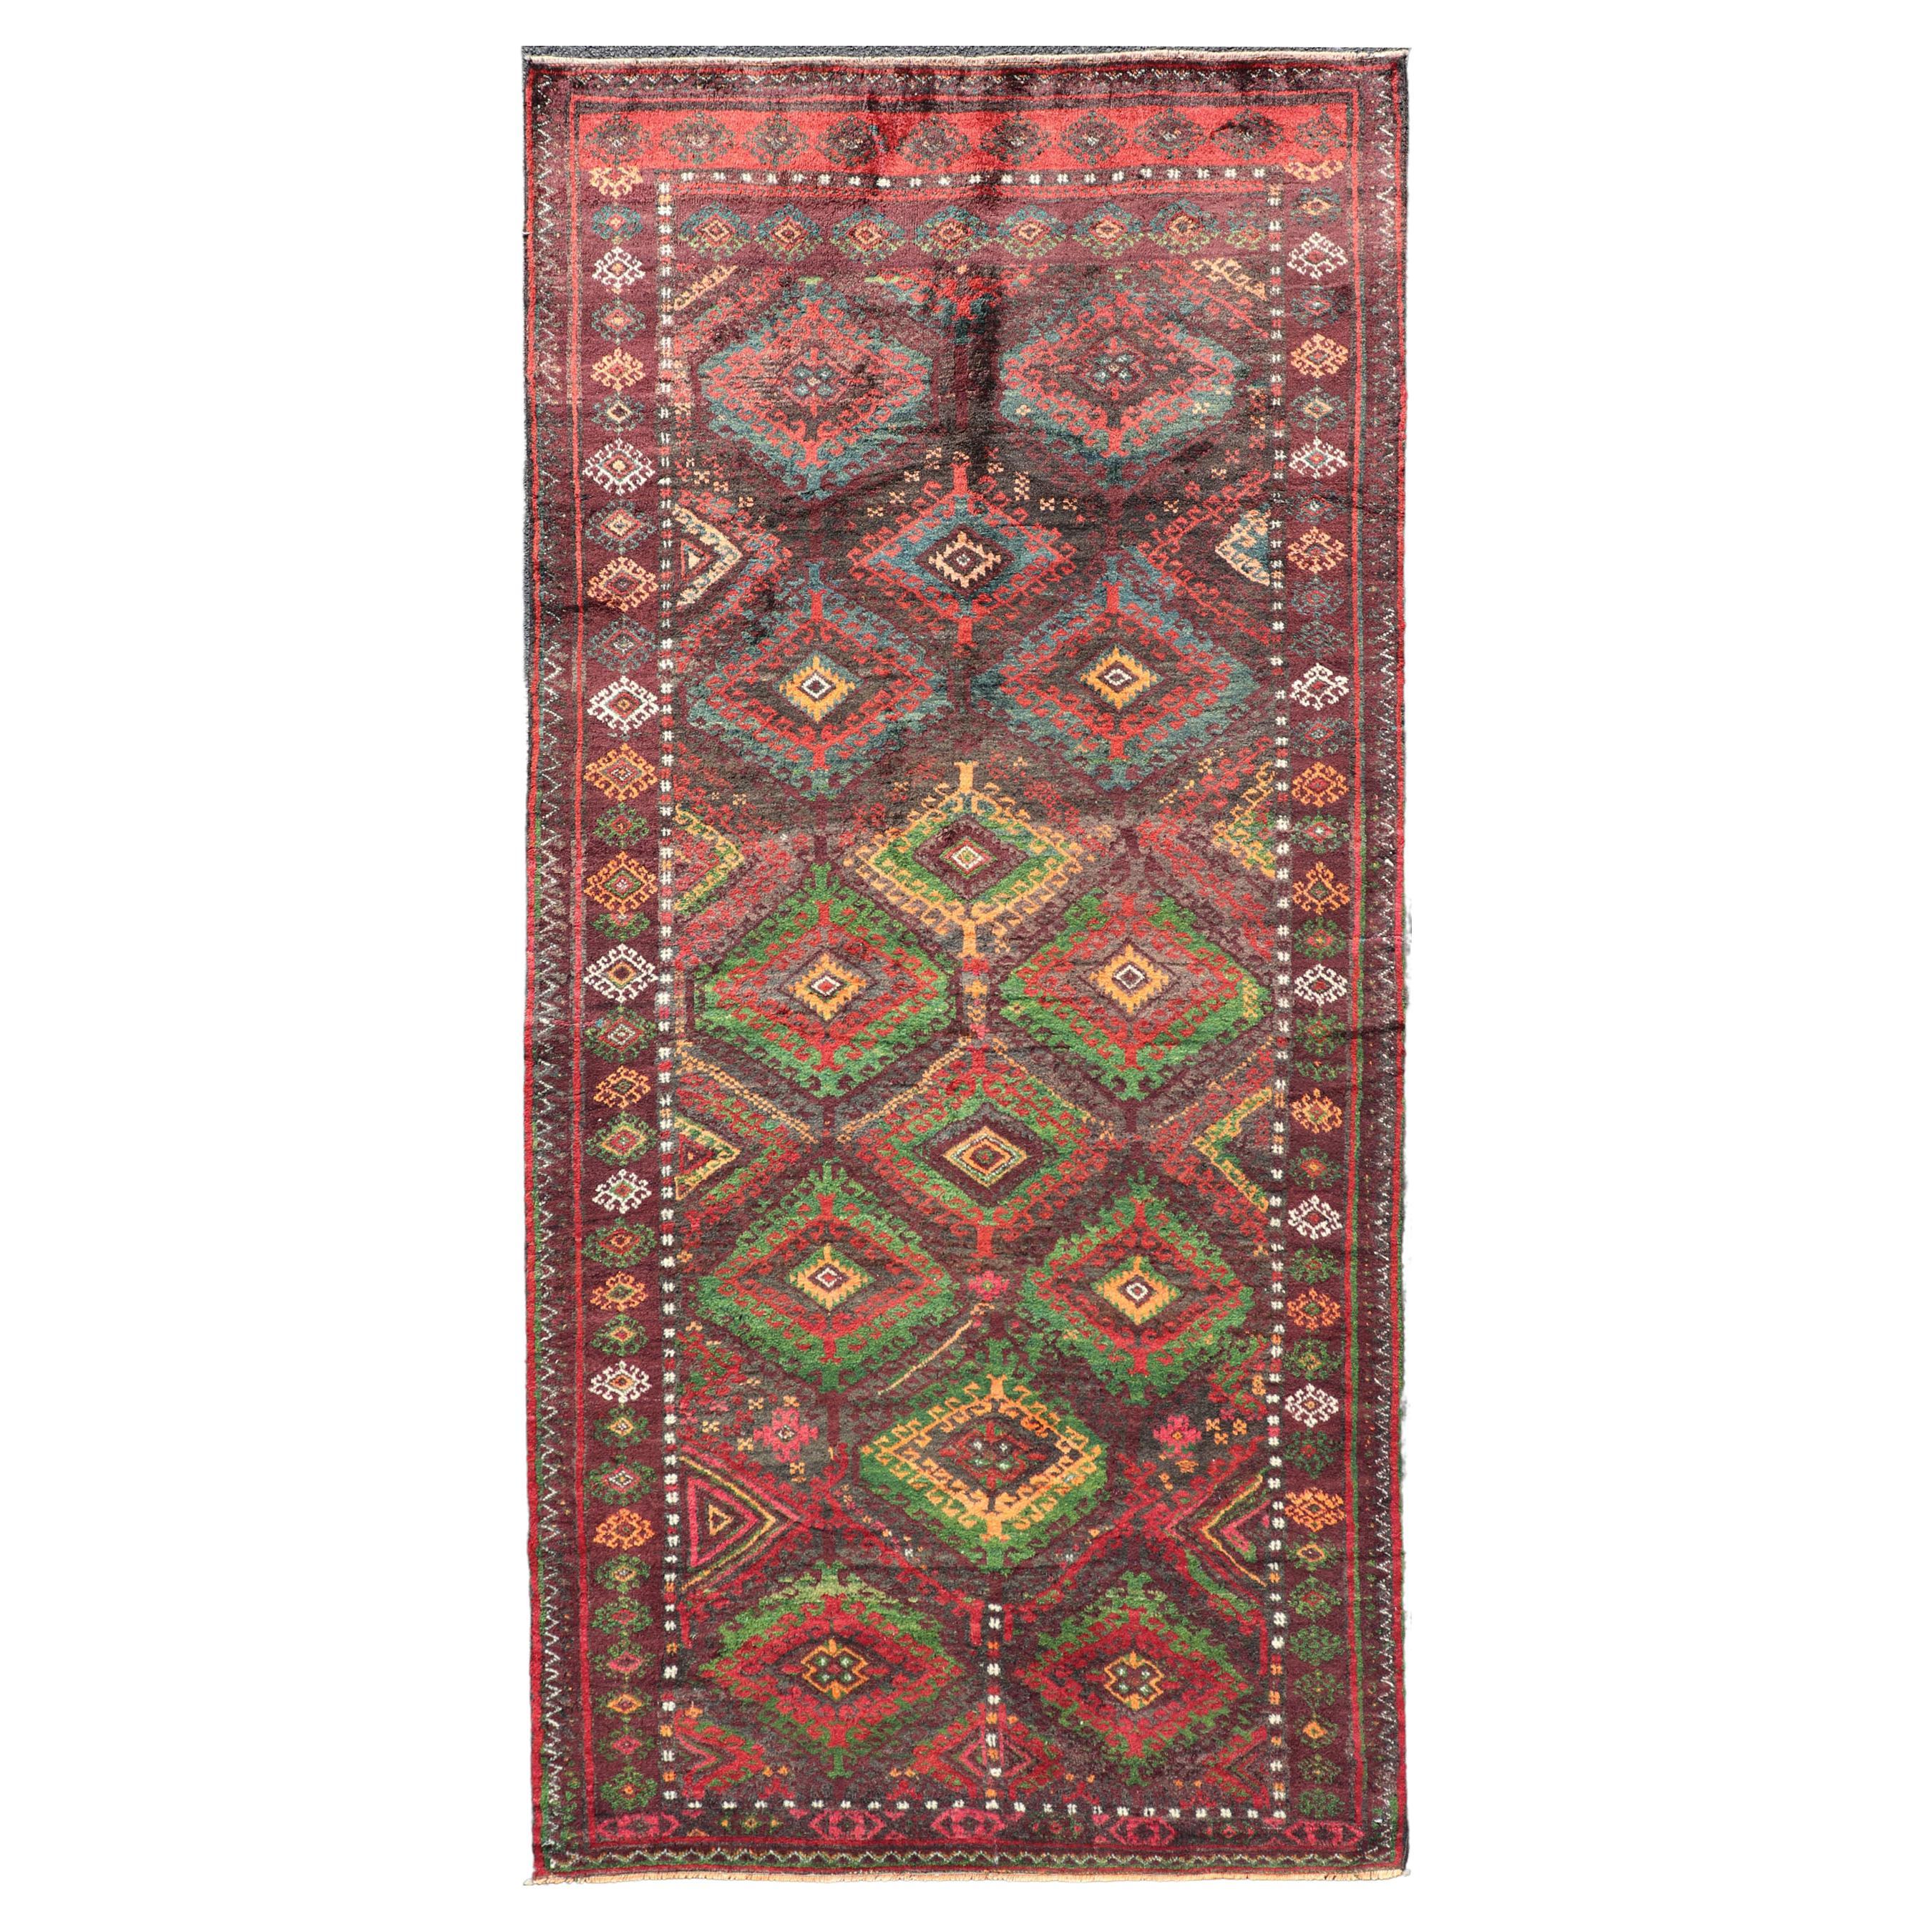 Tapis tribal baluch ancien avec motifs et motifs géométriques colorés 